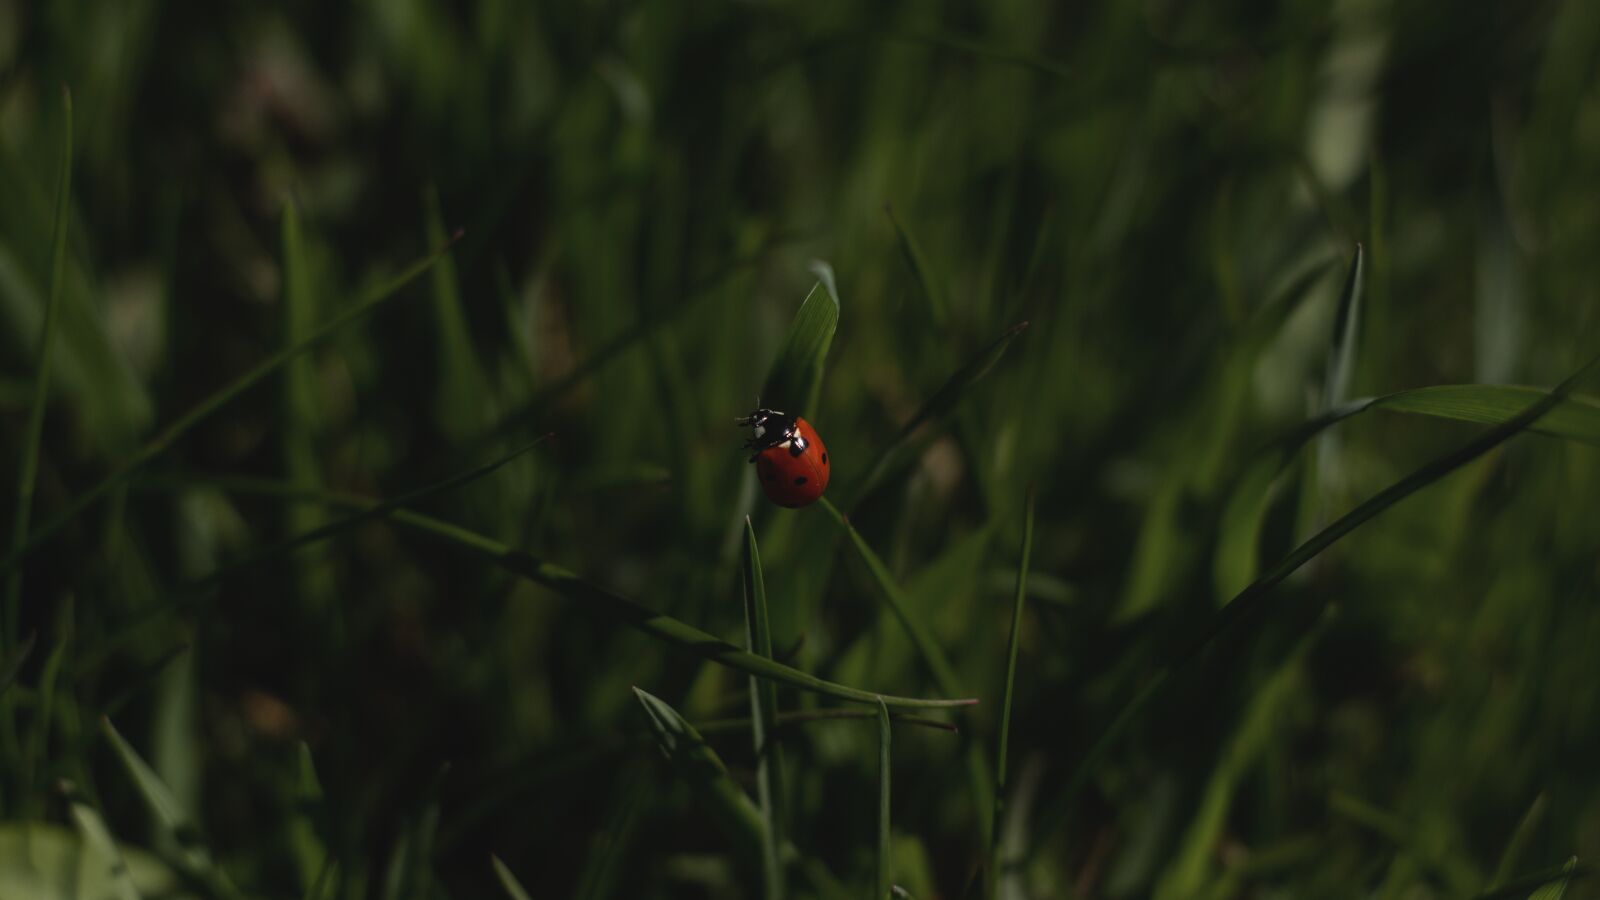 YN50mm f/1.8 II sample photo. Ladybird, red, ladybug photography